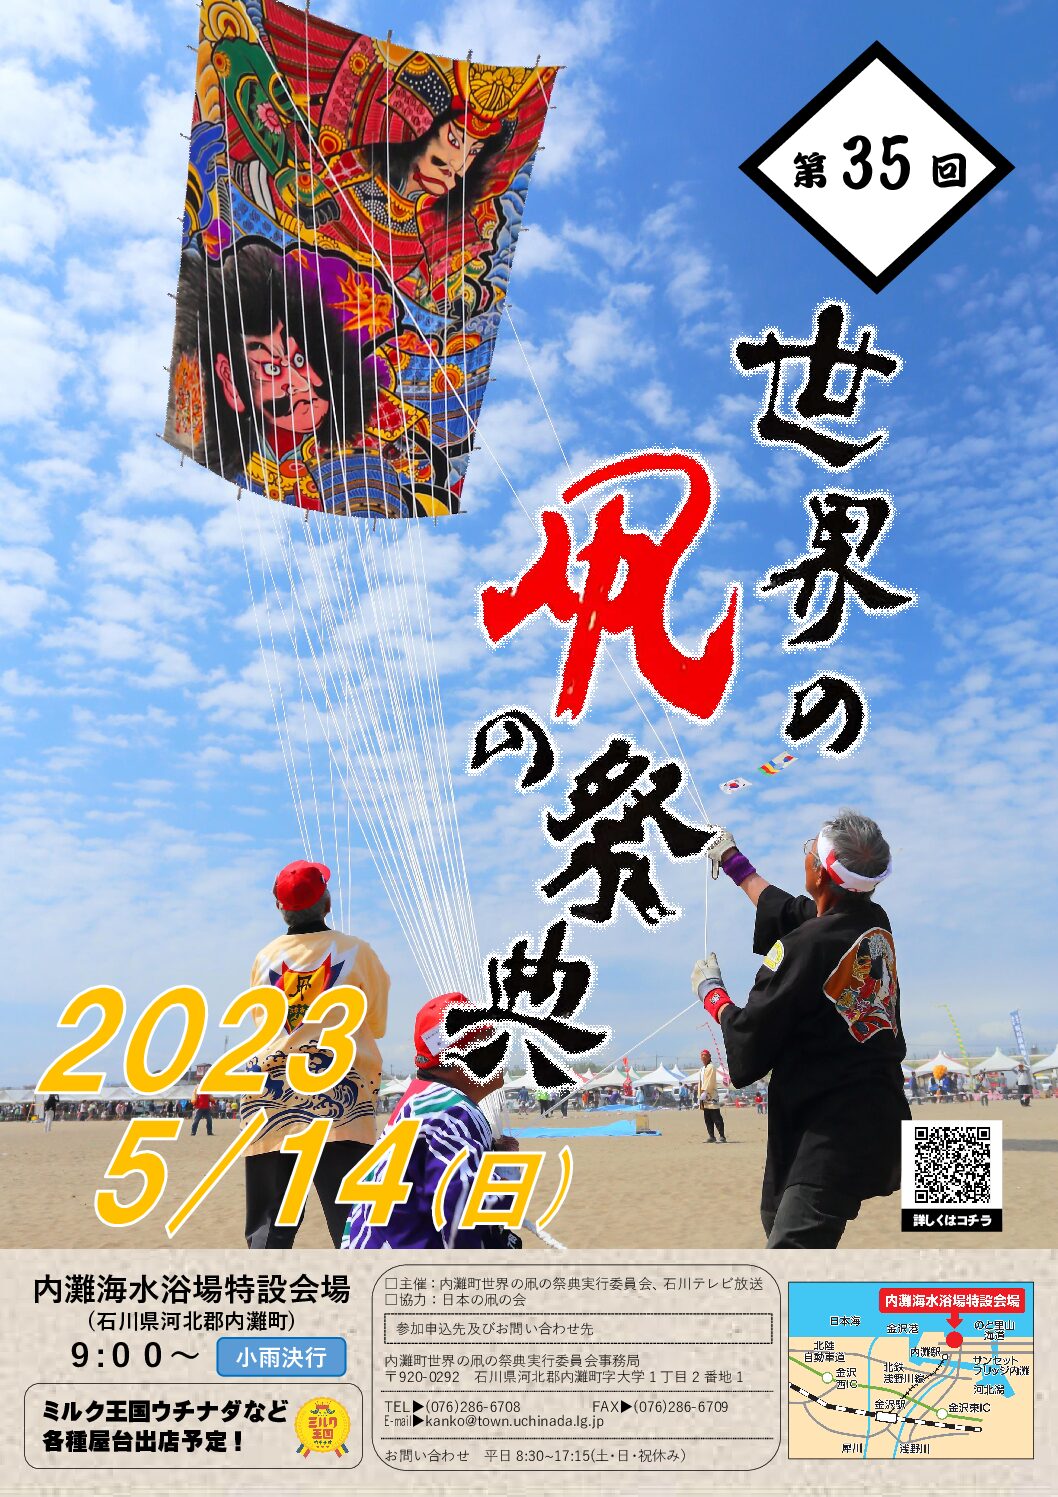 【5/14(日)】世界の凧の祭典@内灘🪁